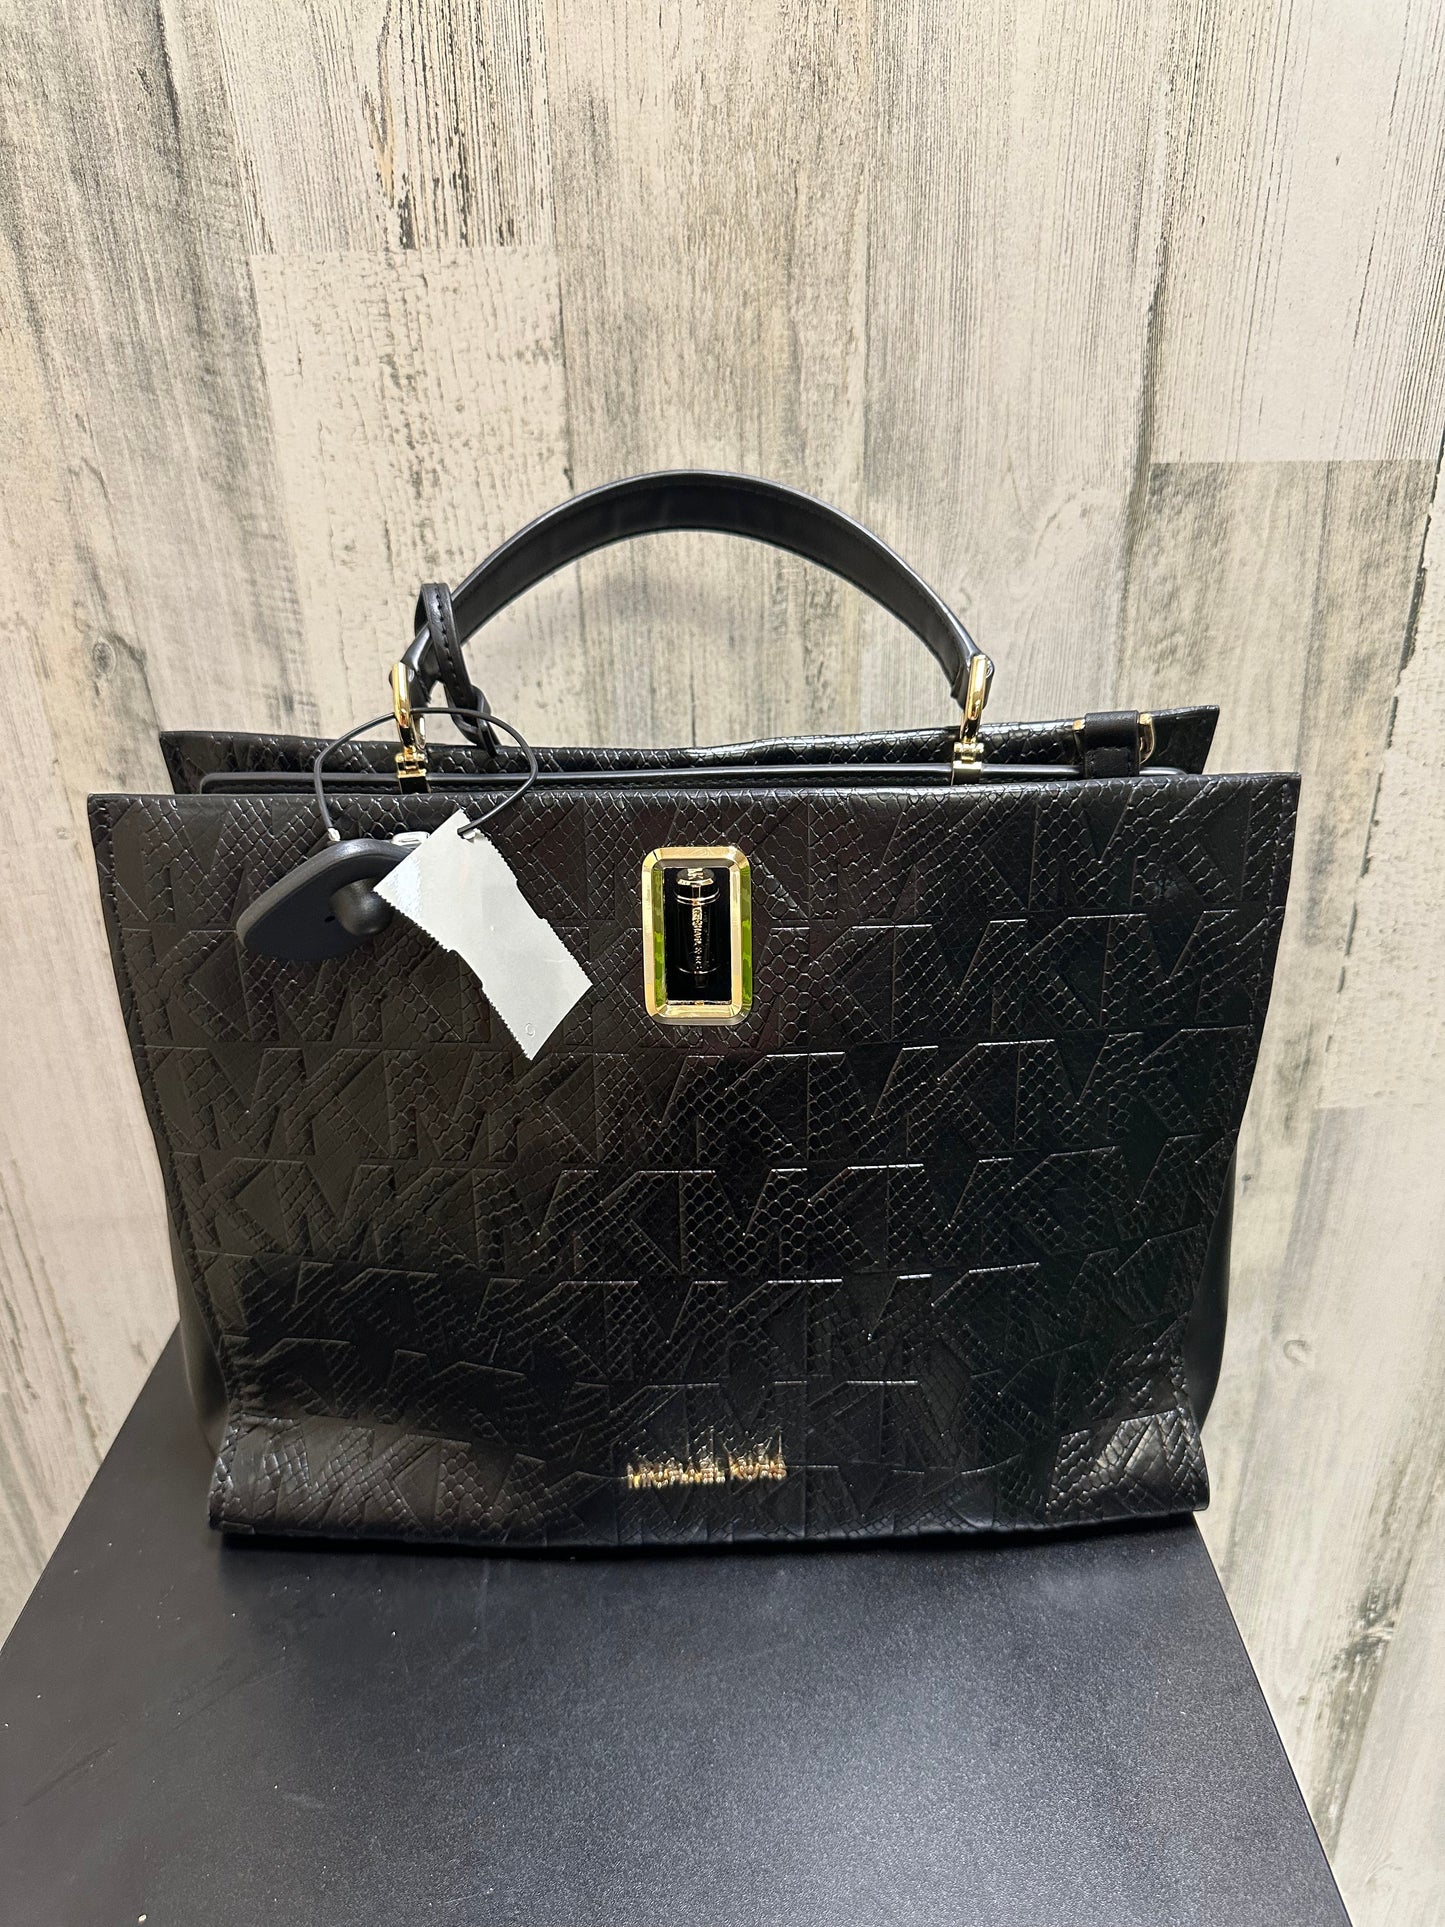 Black Handbag Designer Michael Kors, Size Large